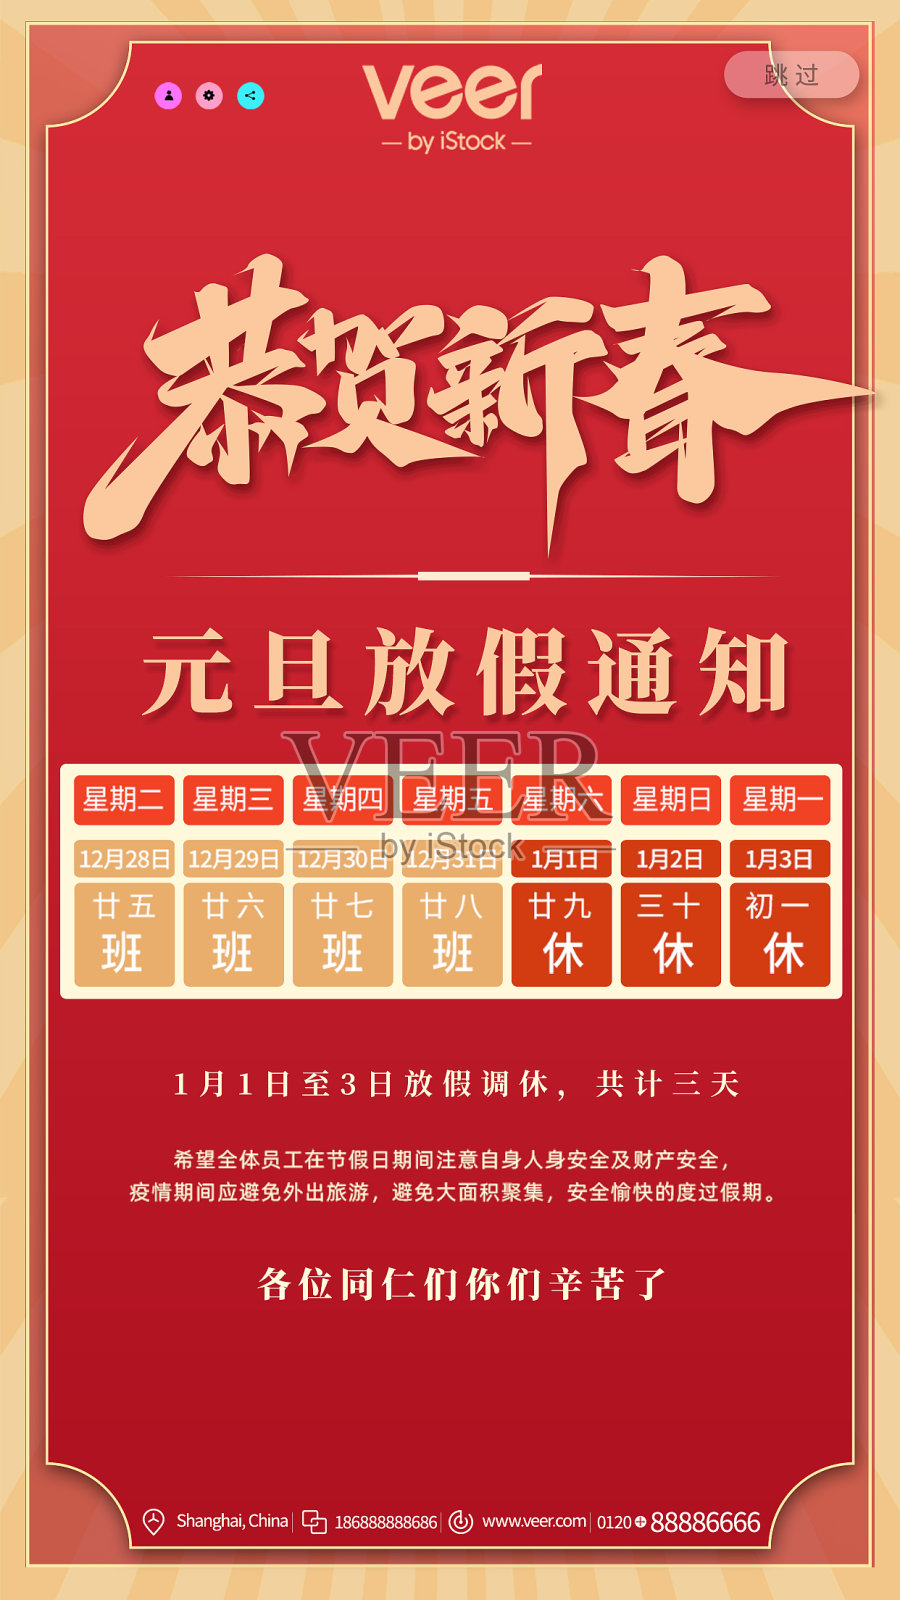 2022新年虎年春节除夕元旦放假通知新媒体海报设计模板设计模板素材